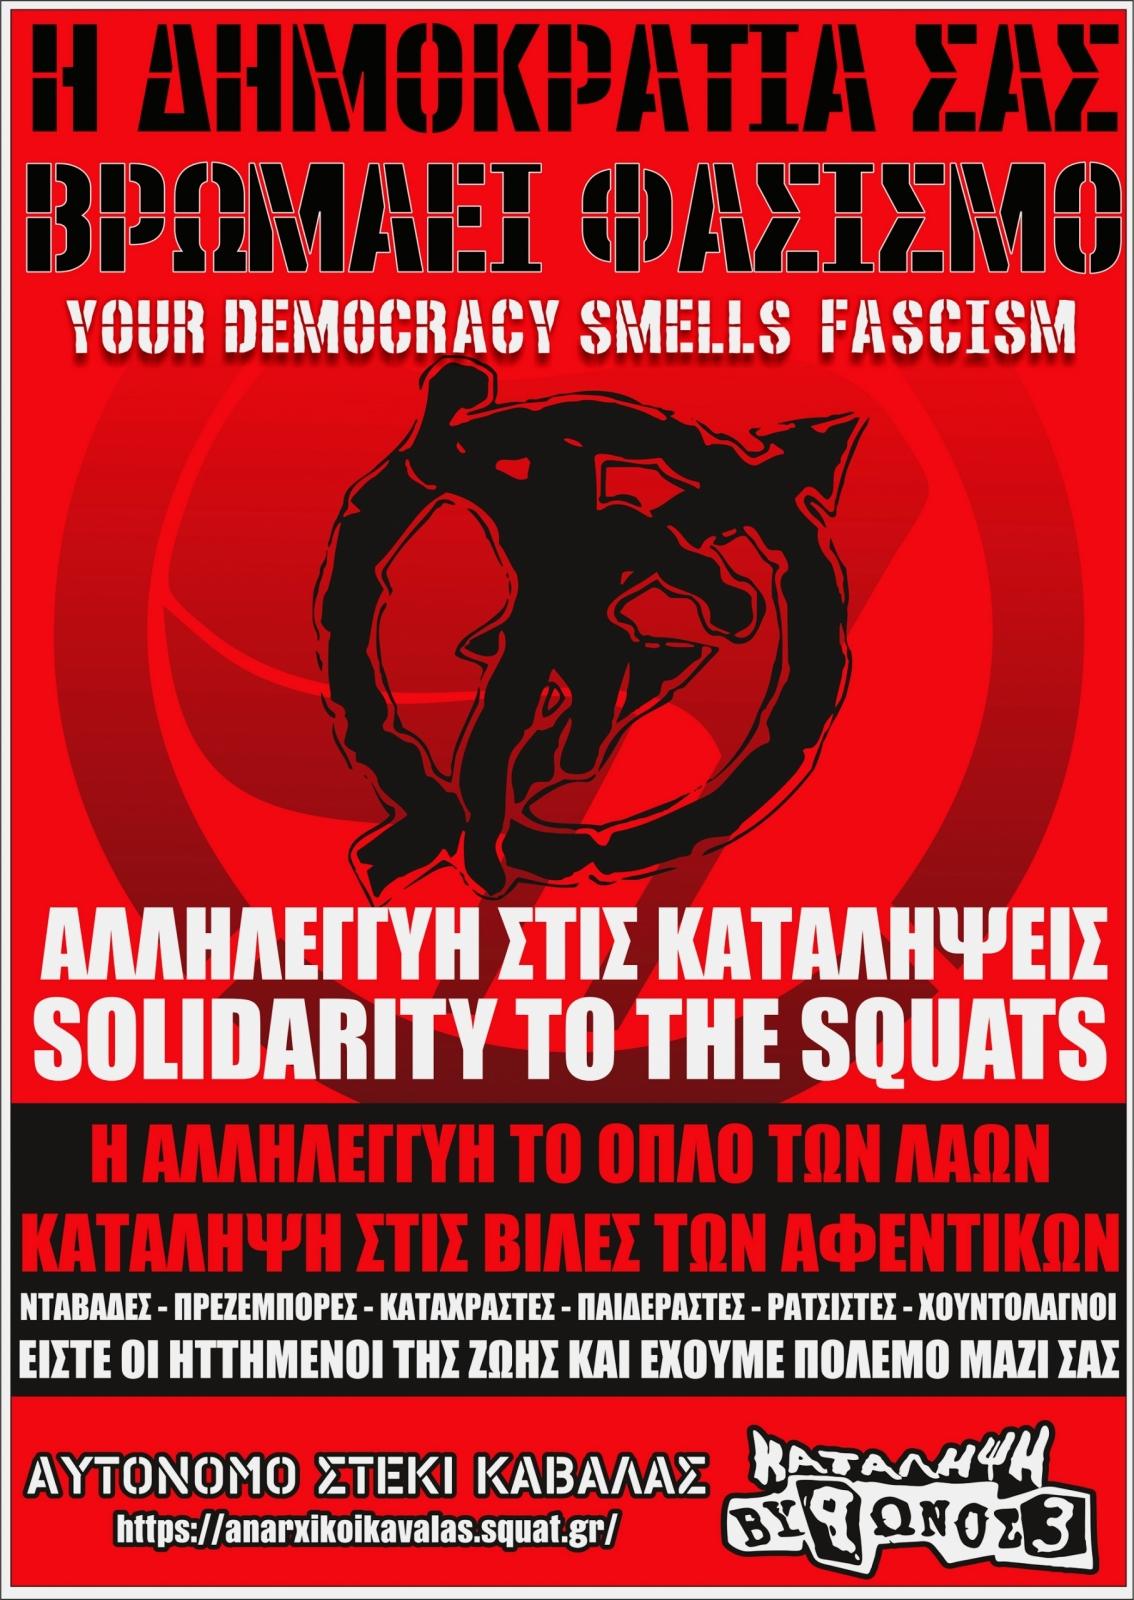 Η δημοκρατία σας βρωμάει φασισμό – Αλληλεγγύη σε όλες τις καταλήψεις